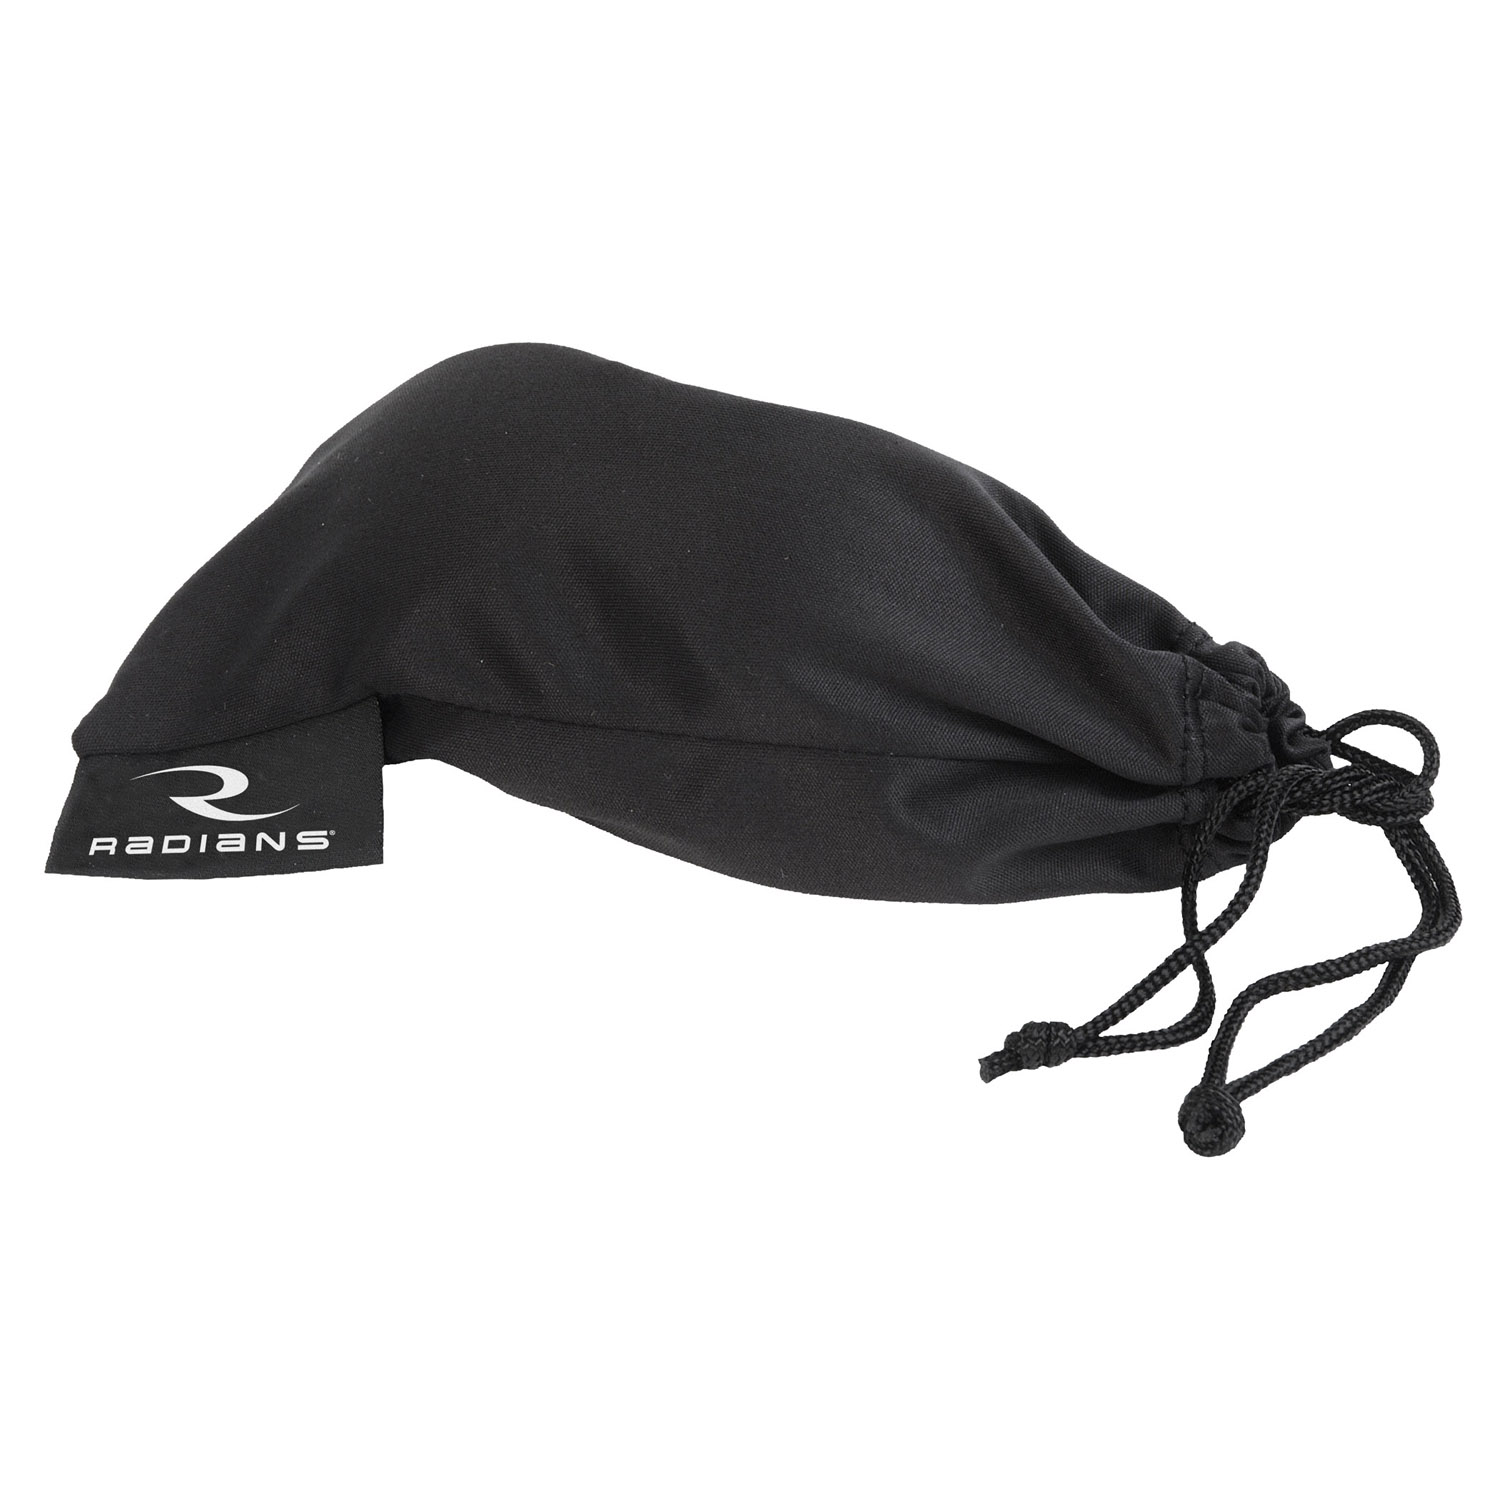 Microfiber Drawstring Eyewear Bag - Black